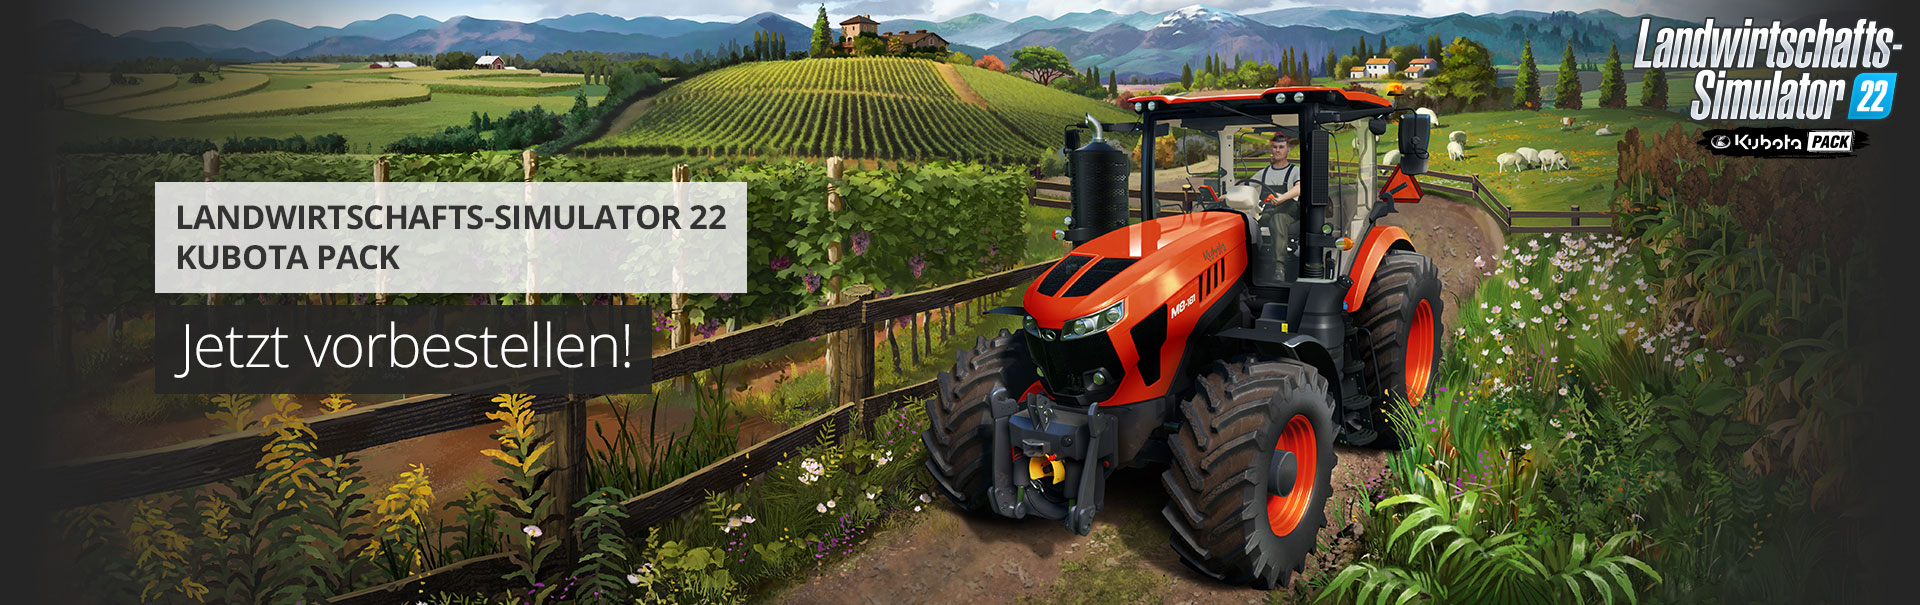 Landwirtschafts-Simulator 22 erhält weitere Marken: Kubota Pack für PC und  Konsolen angekündigt -  News